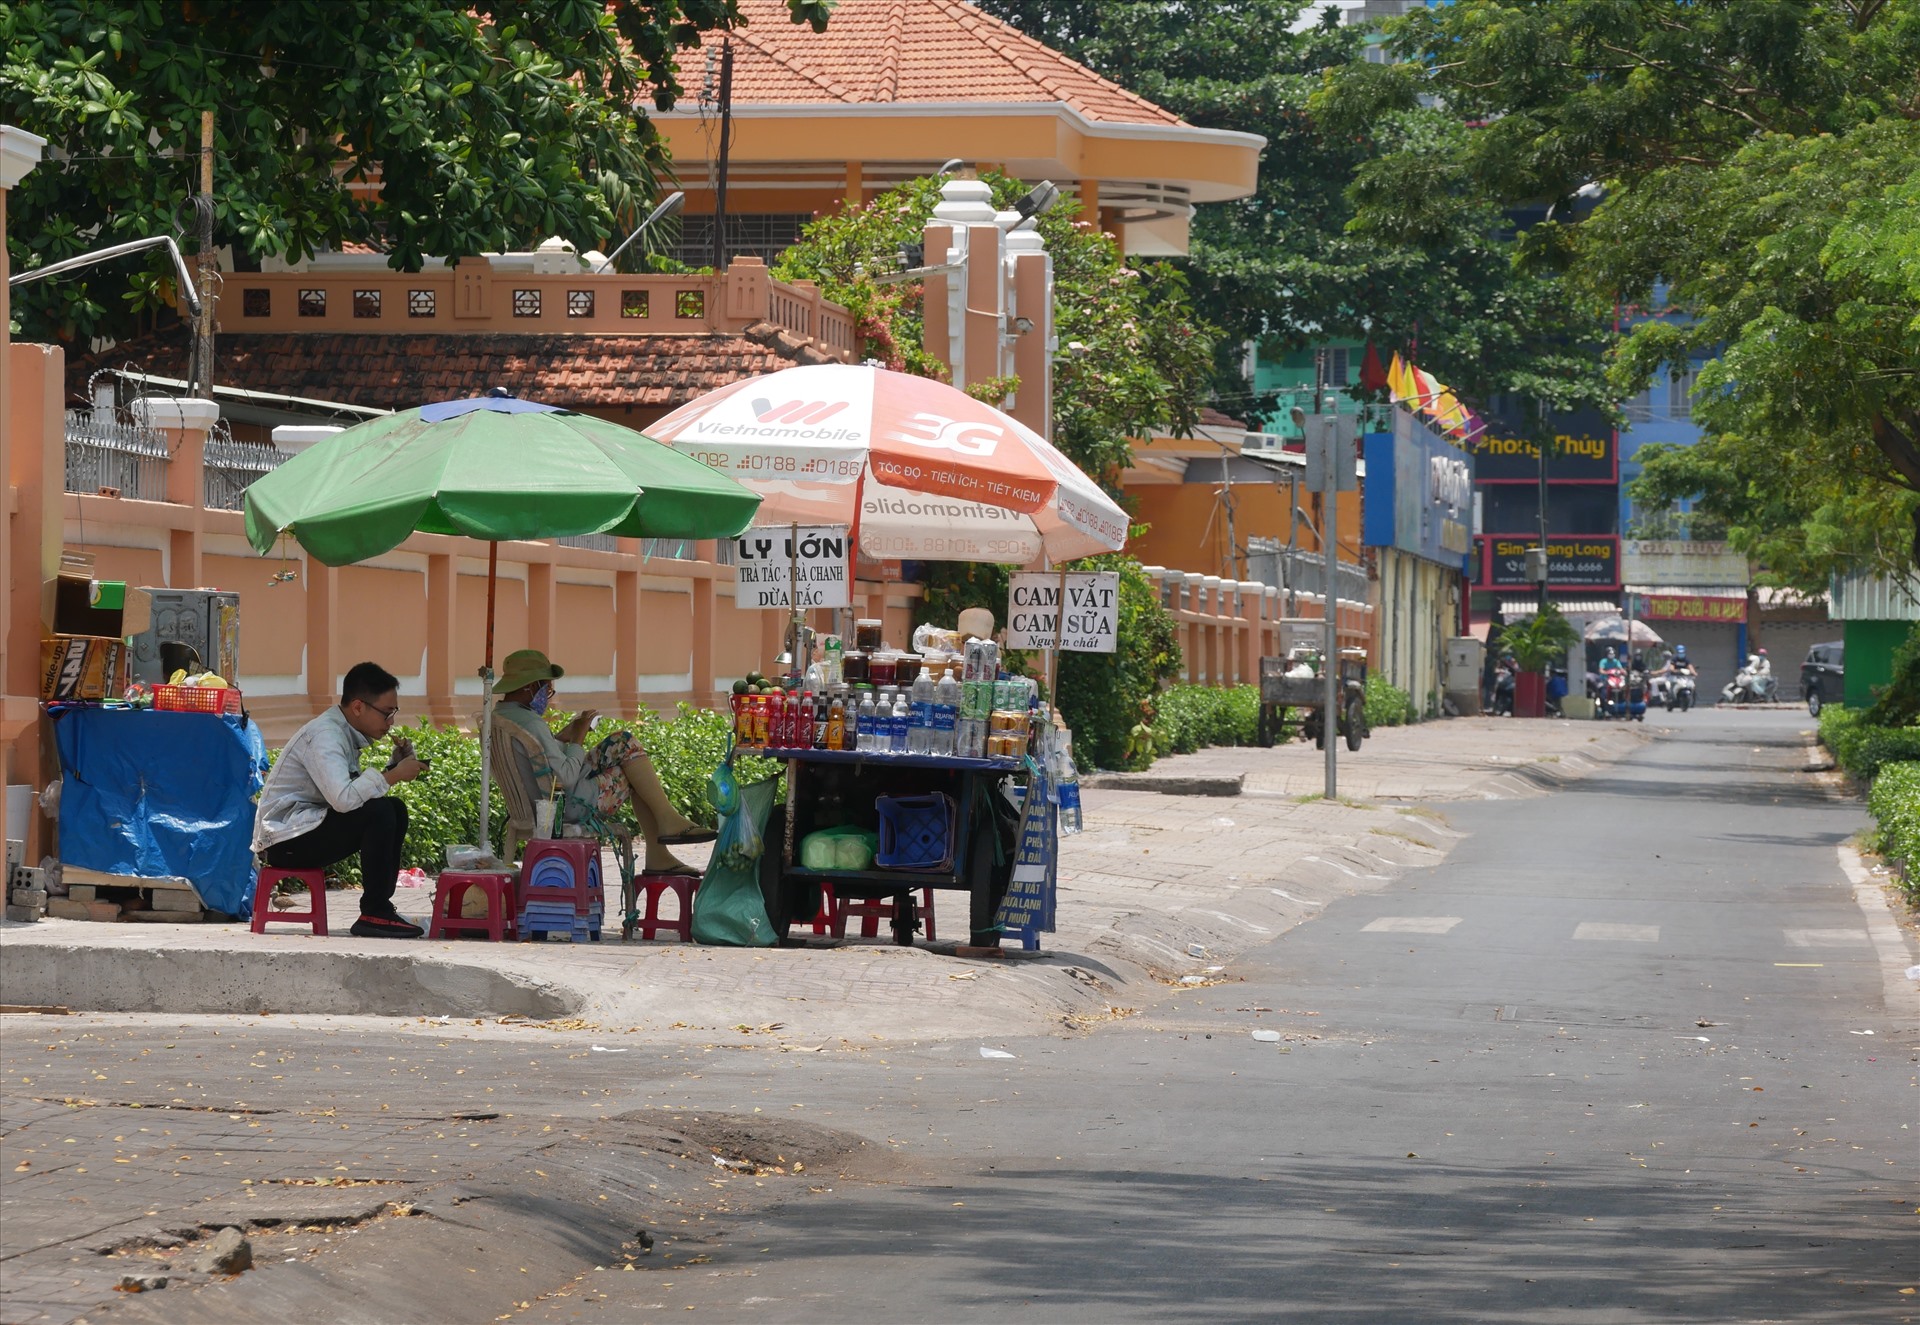 “Thời tiết nắng nóng thì việc buôn bán khá vất vả nhưng khách uống nước cũng nhiều hơn”  chị L.T.H bán nước trên đường Nguyễn Văn Cừ (quận 5) cho hay.